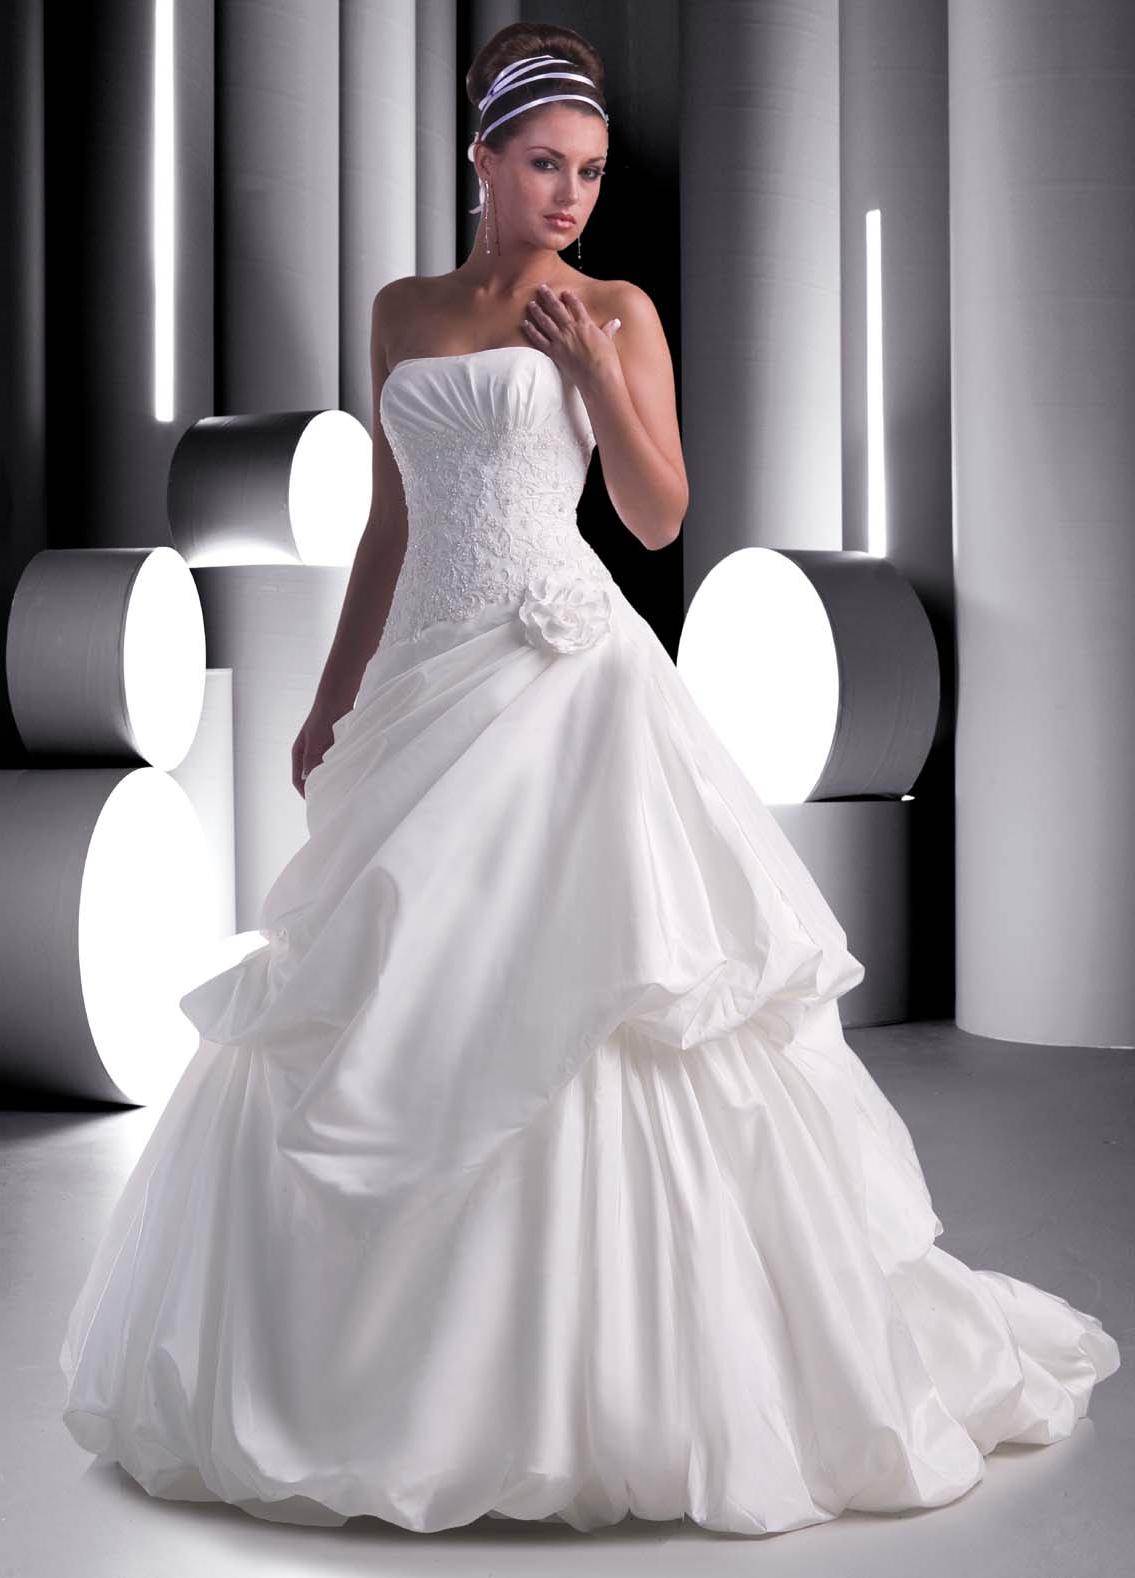 Davinci Bridal wedding gown  